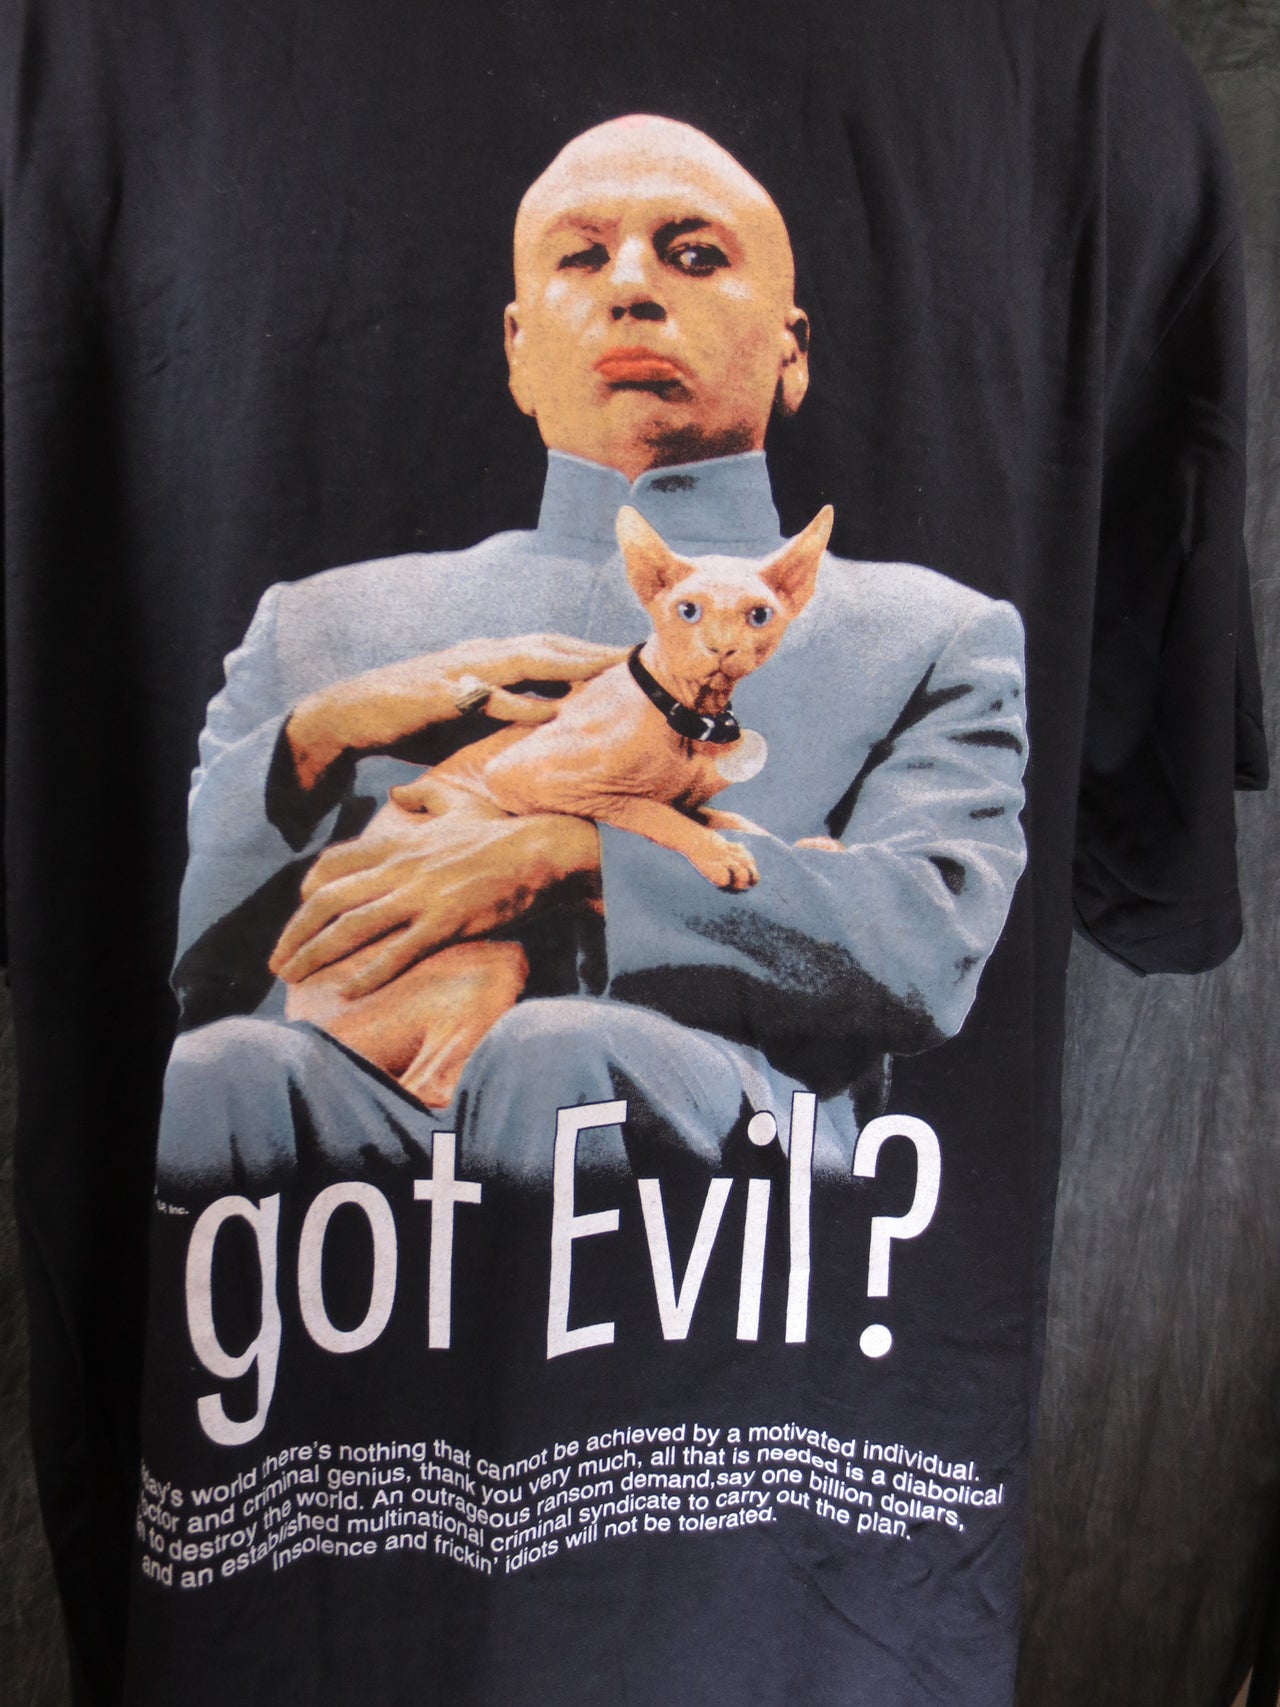 Dr. Evil Got Evil Tshirt - TshirtNow.net - 1